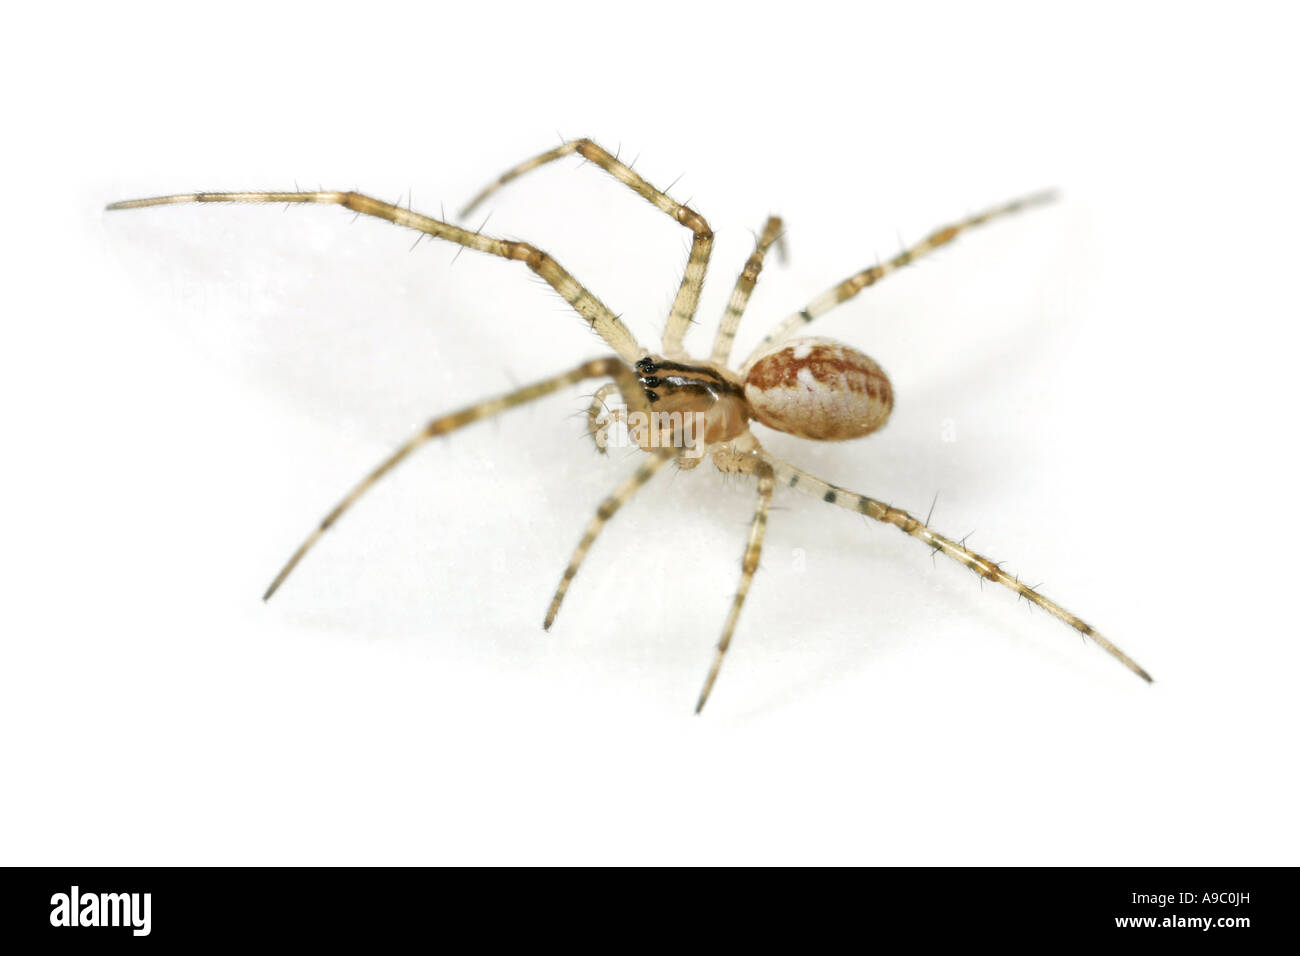 Pityohyphantes Phrygianus spider, family Linyphiidae Stock Photo